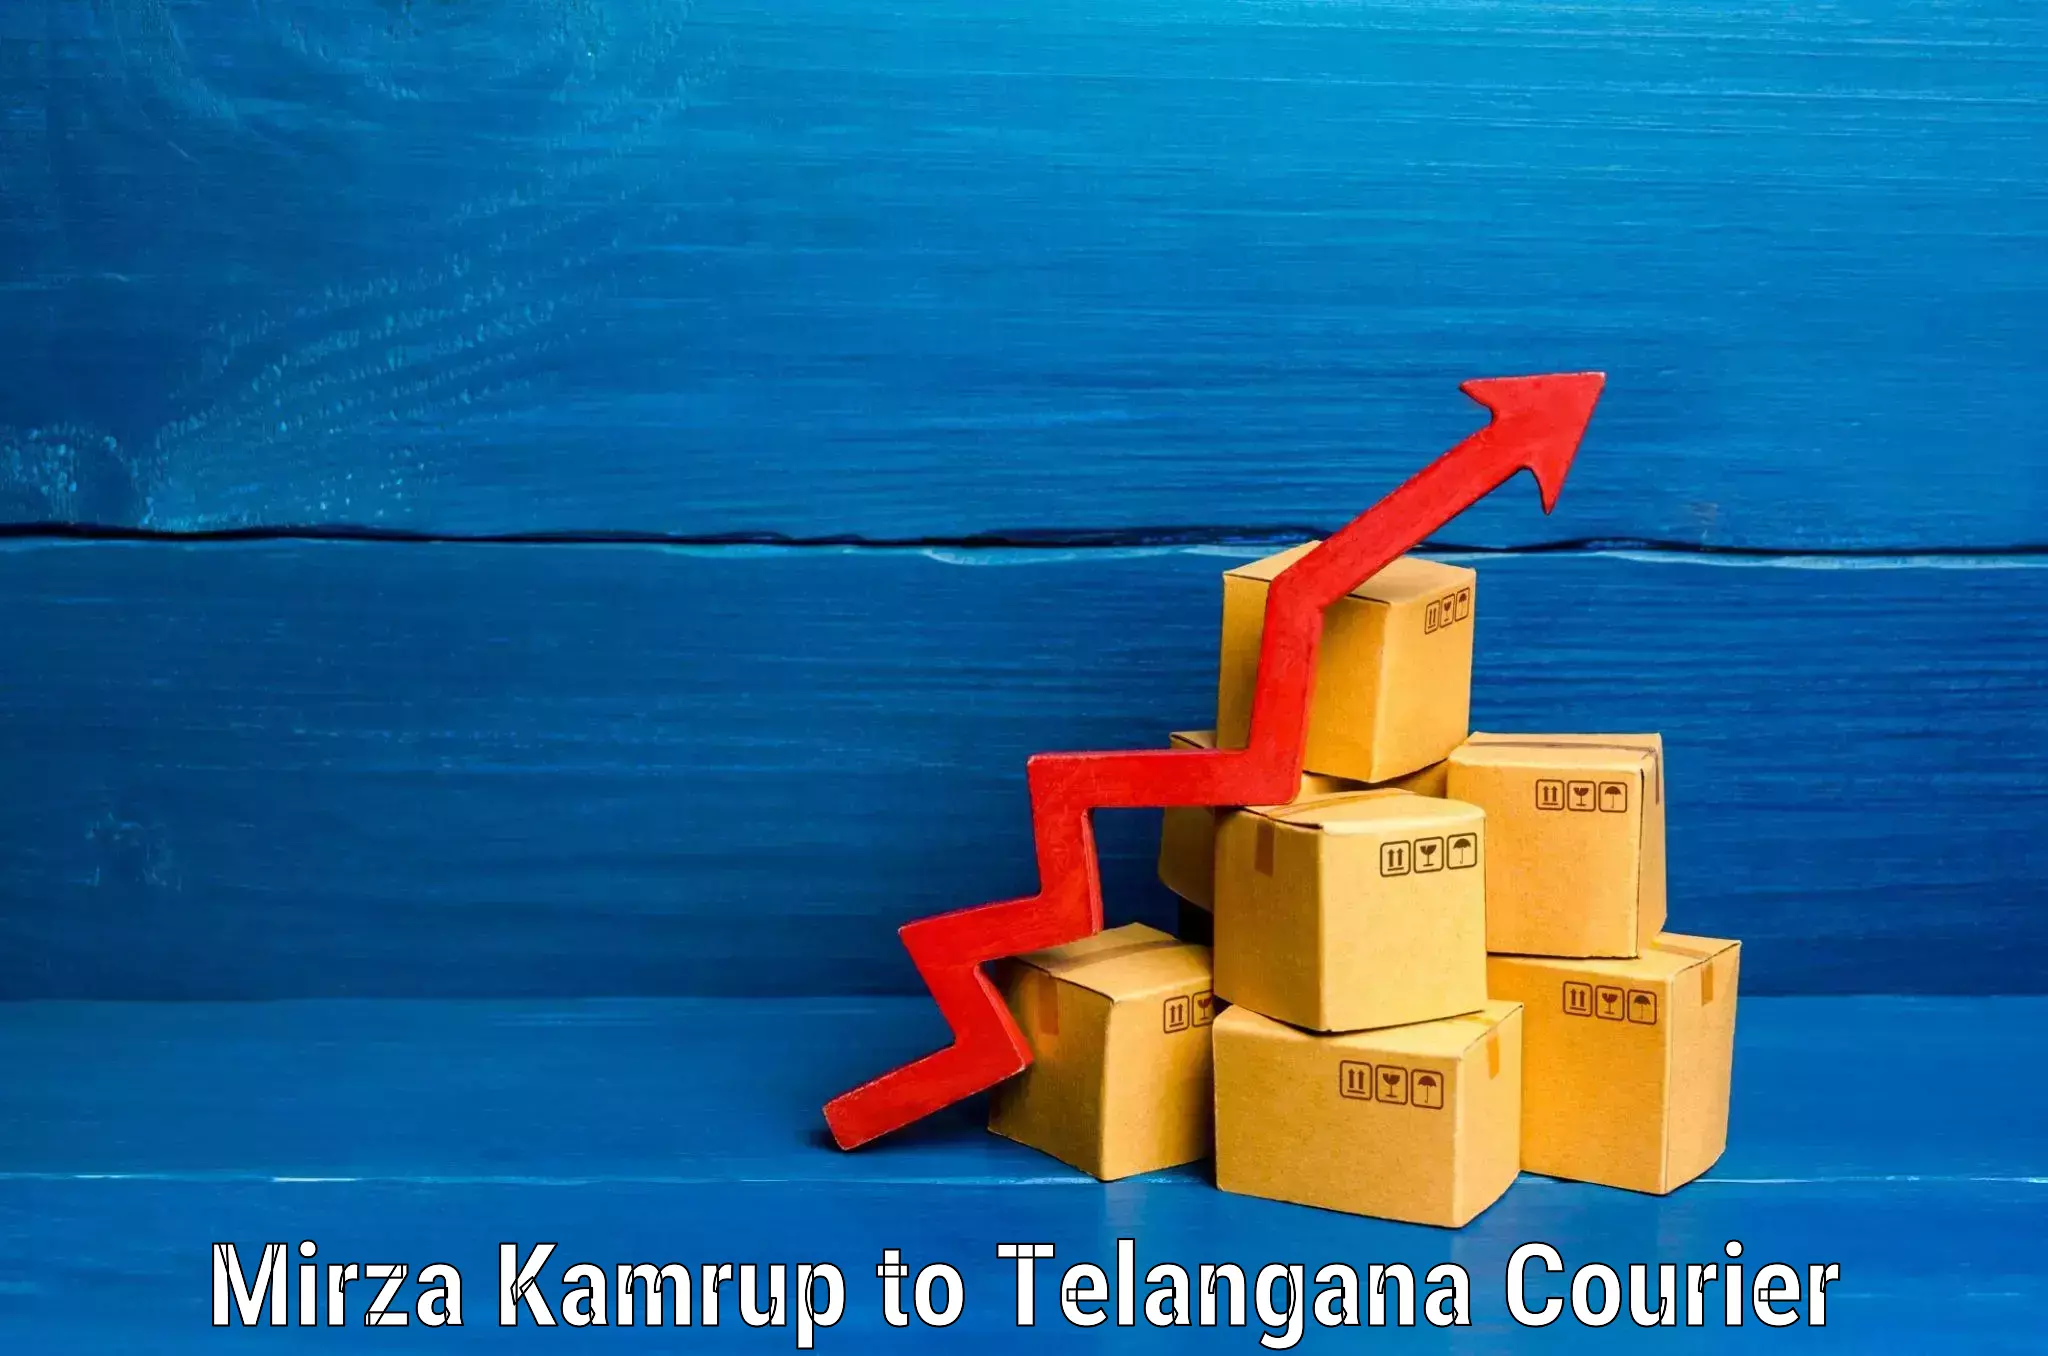 Luggage shipment tracking Mirza Kamrup to Alair